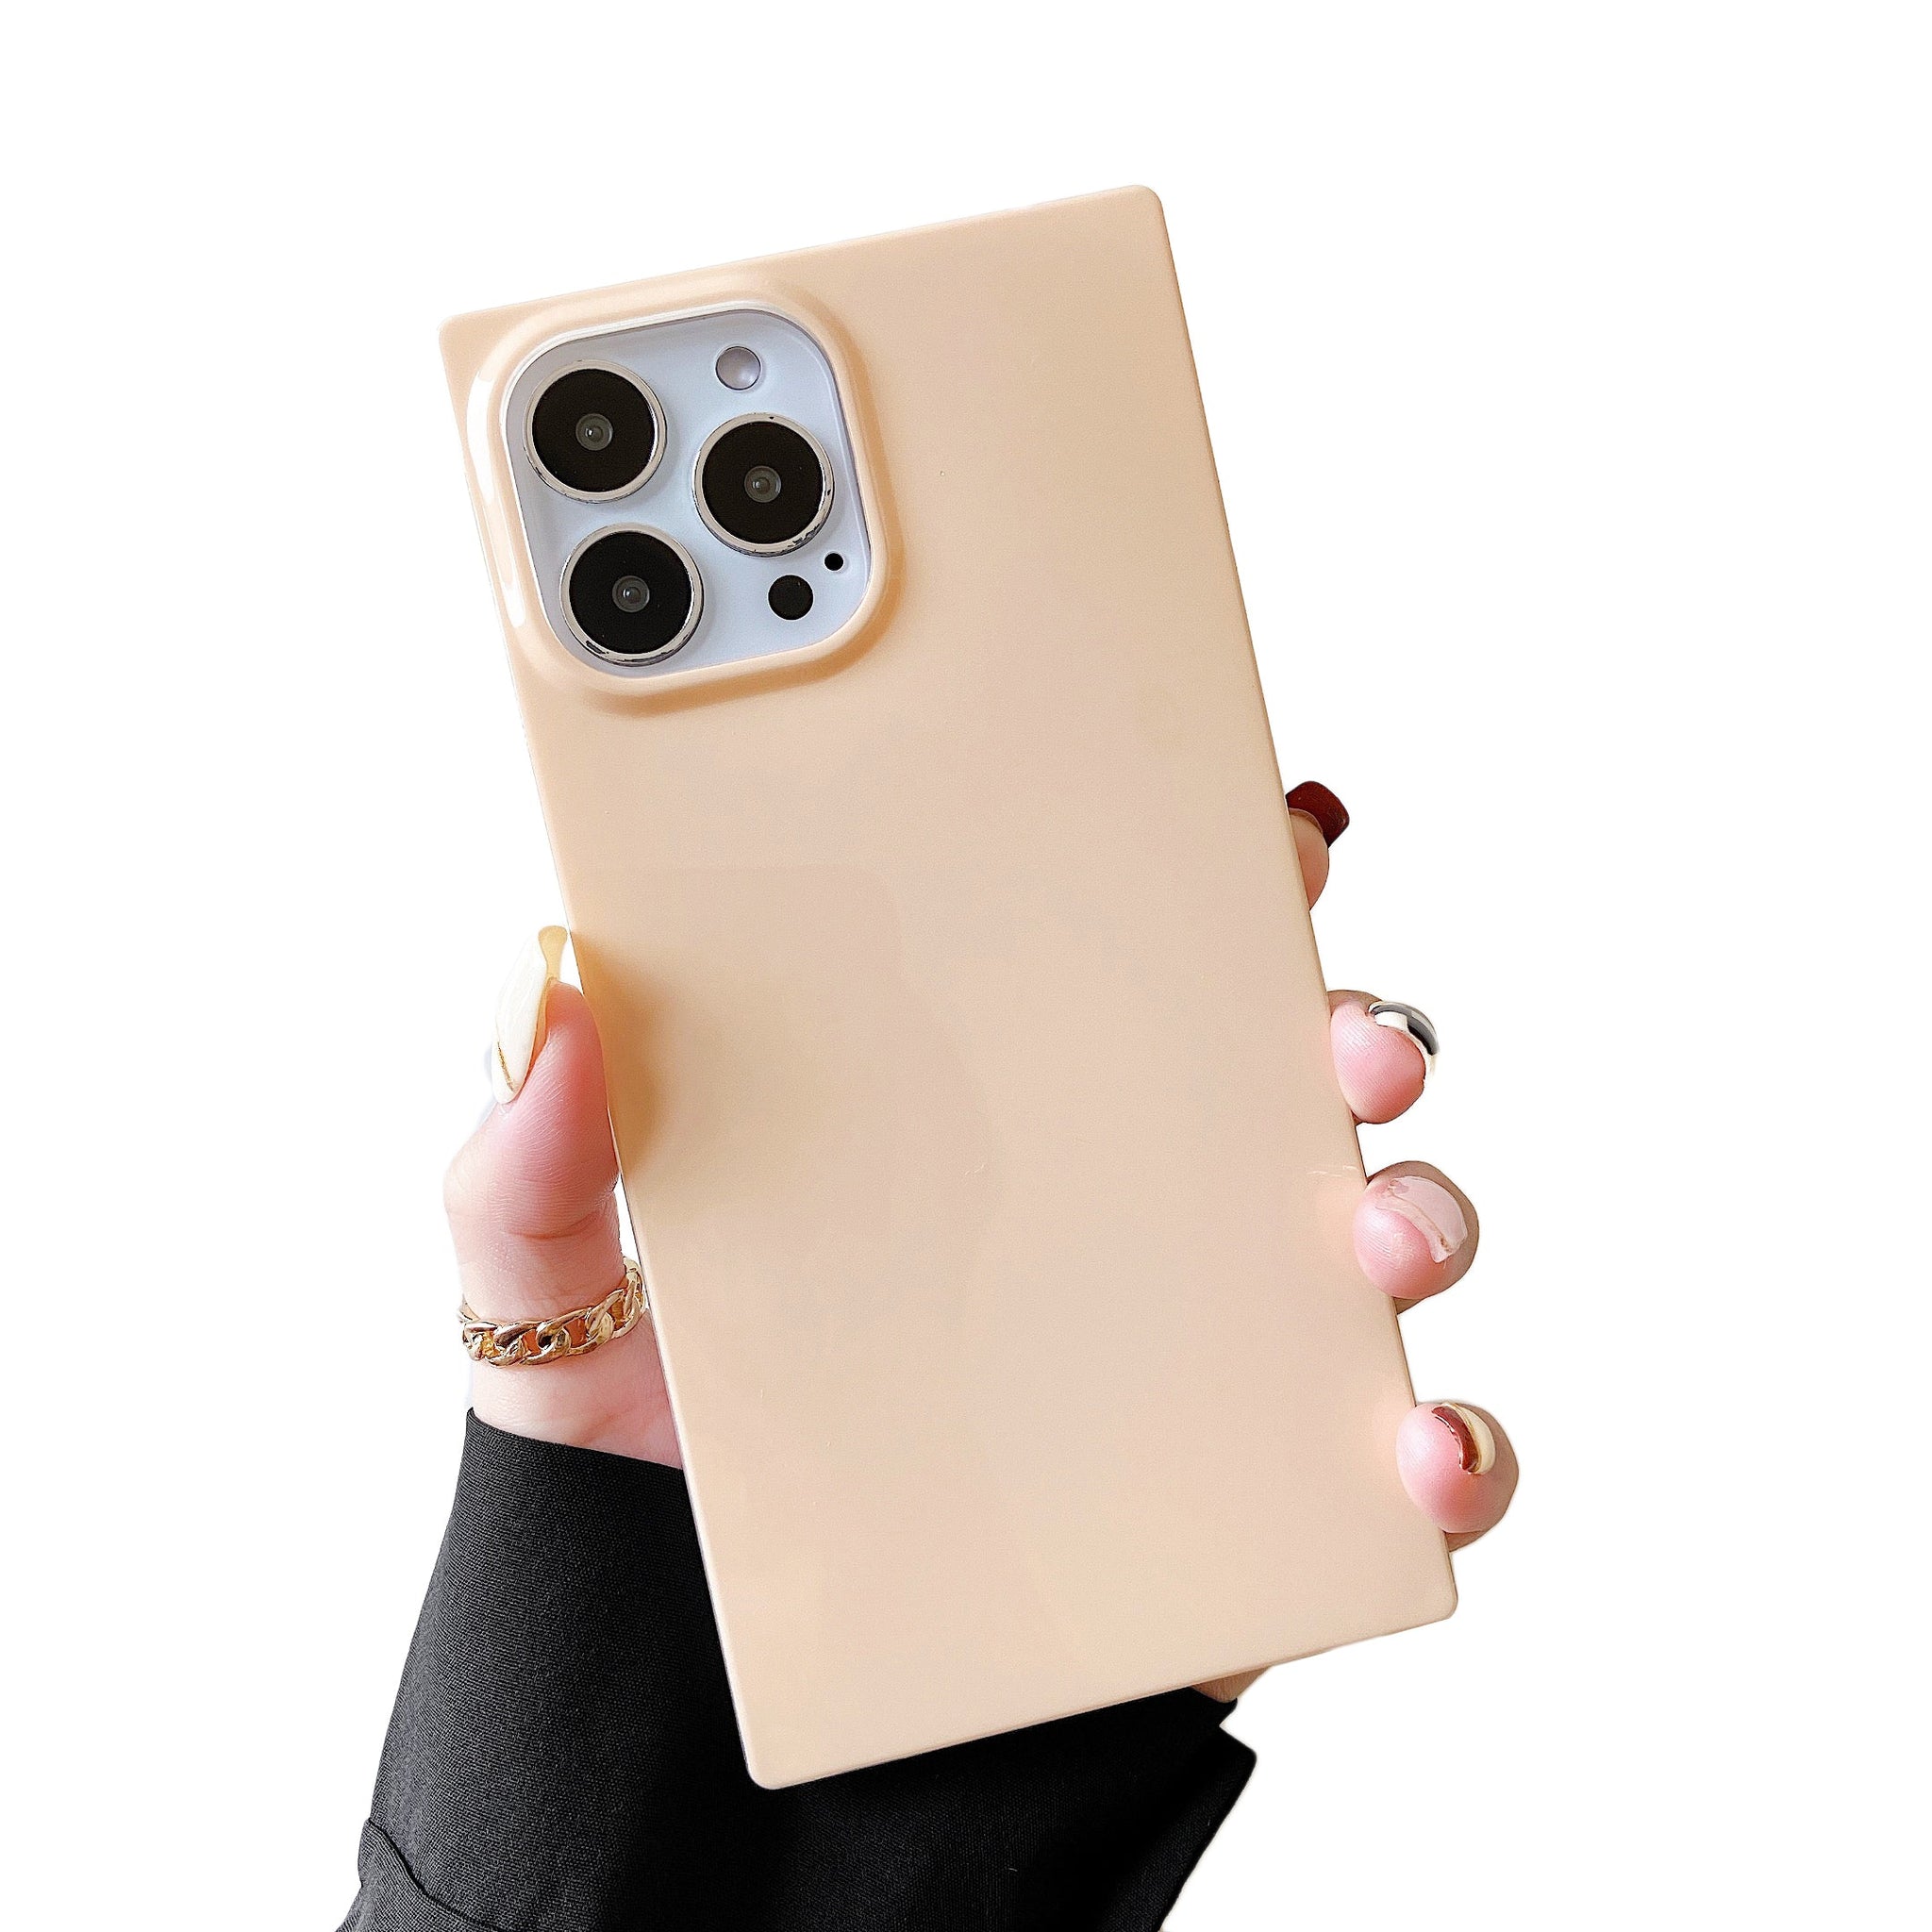 iPhone 11 Pro Case Square Neutral Plain Color (Nude)